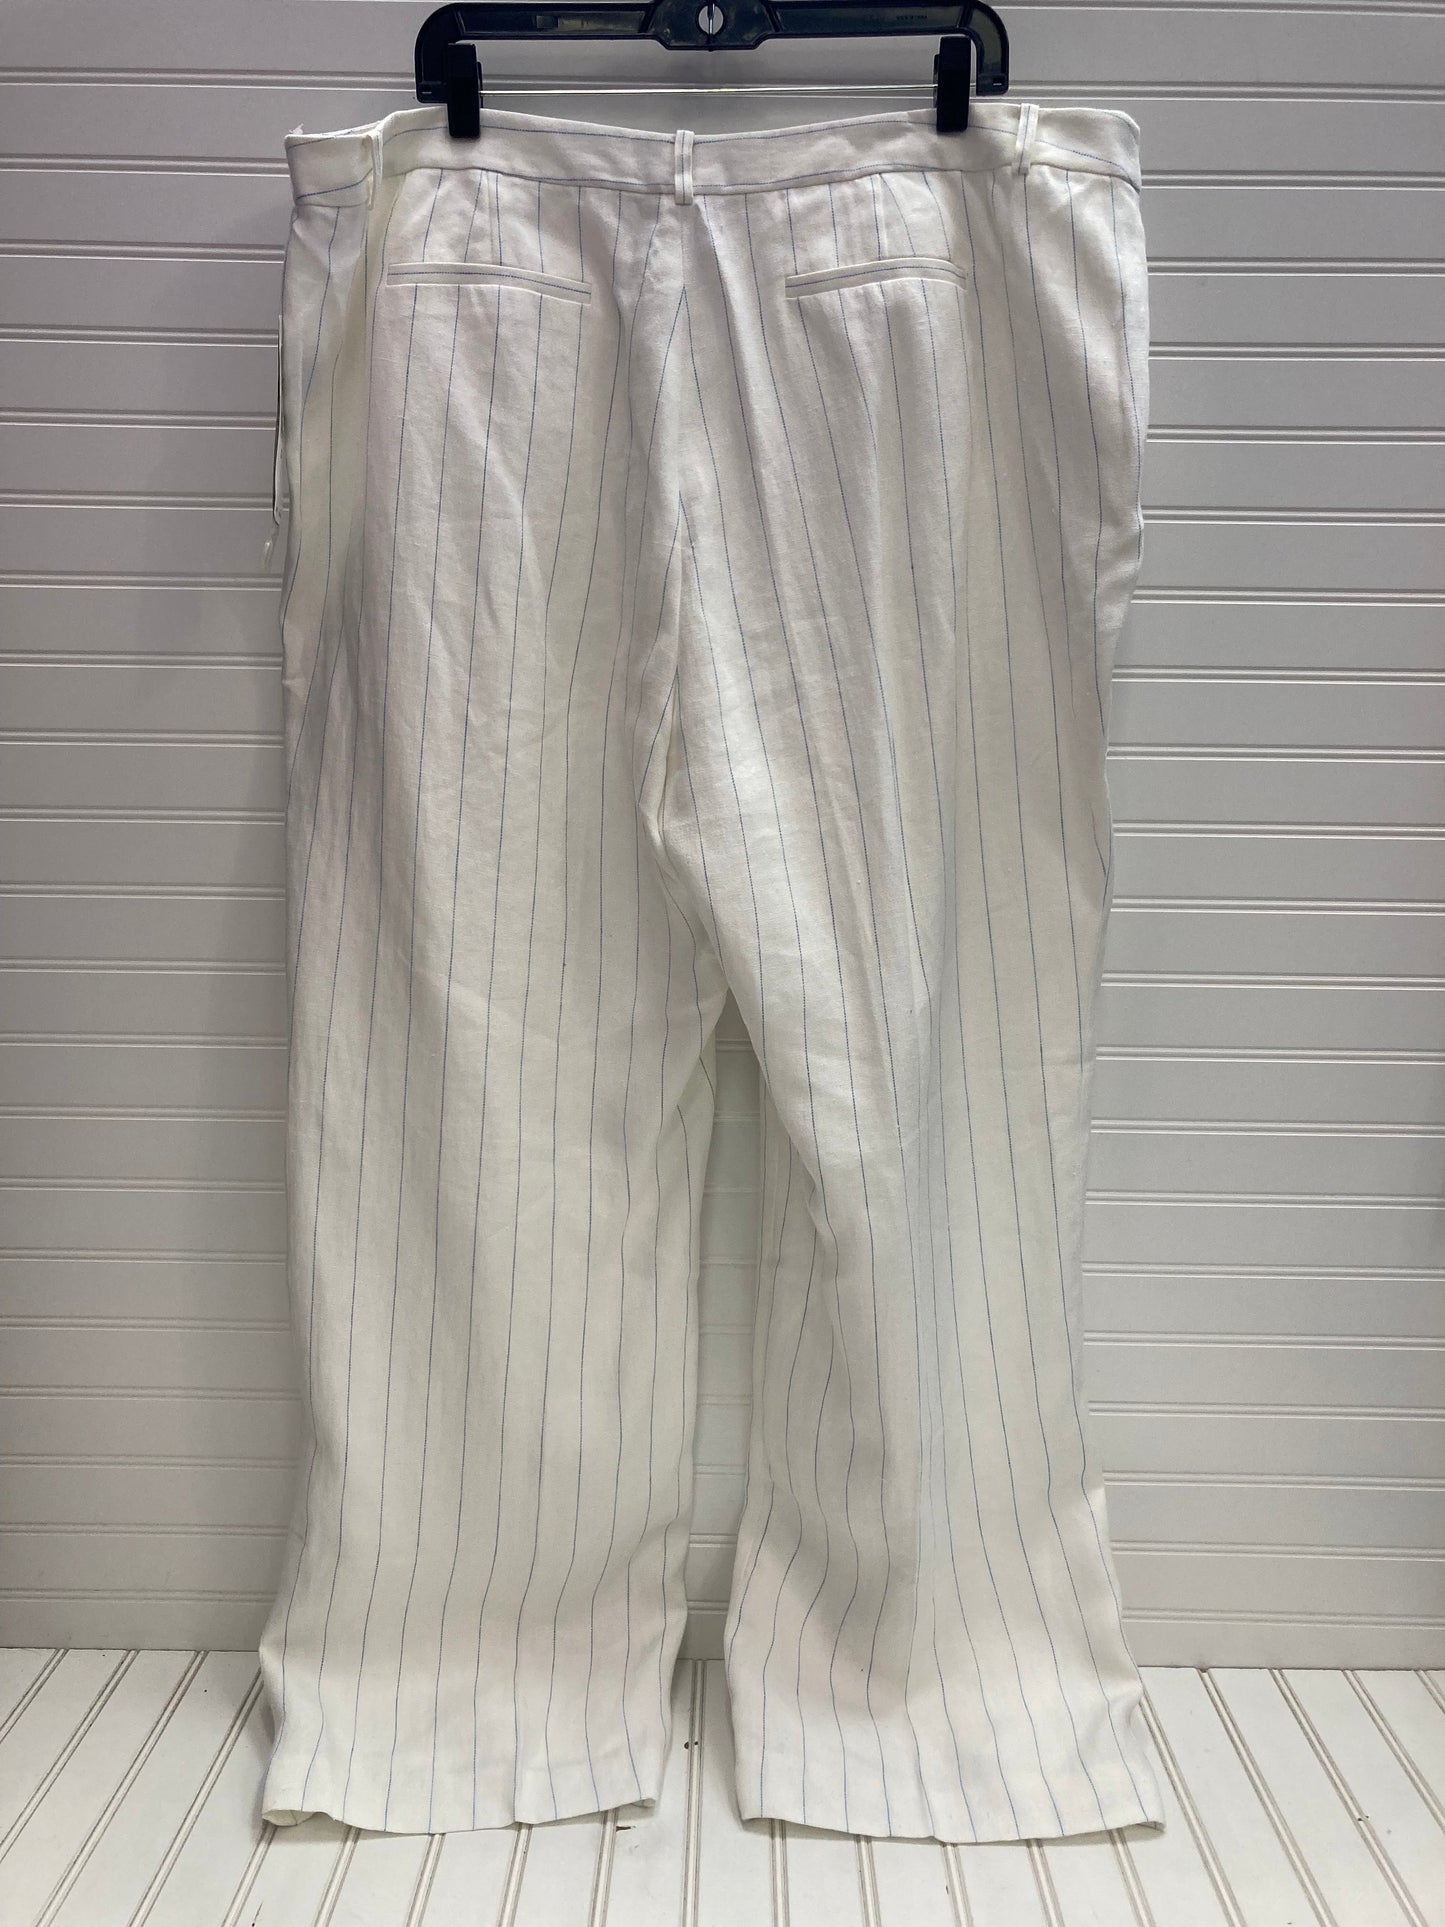 Blue & White Pants Dress Lauren By Ralph Lauren, Size 20